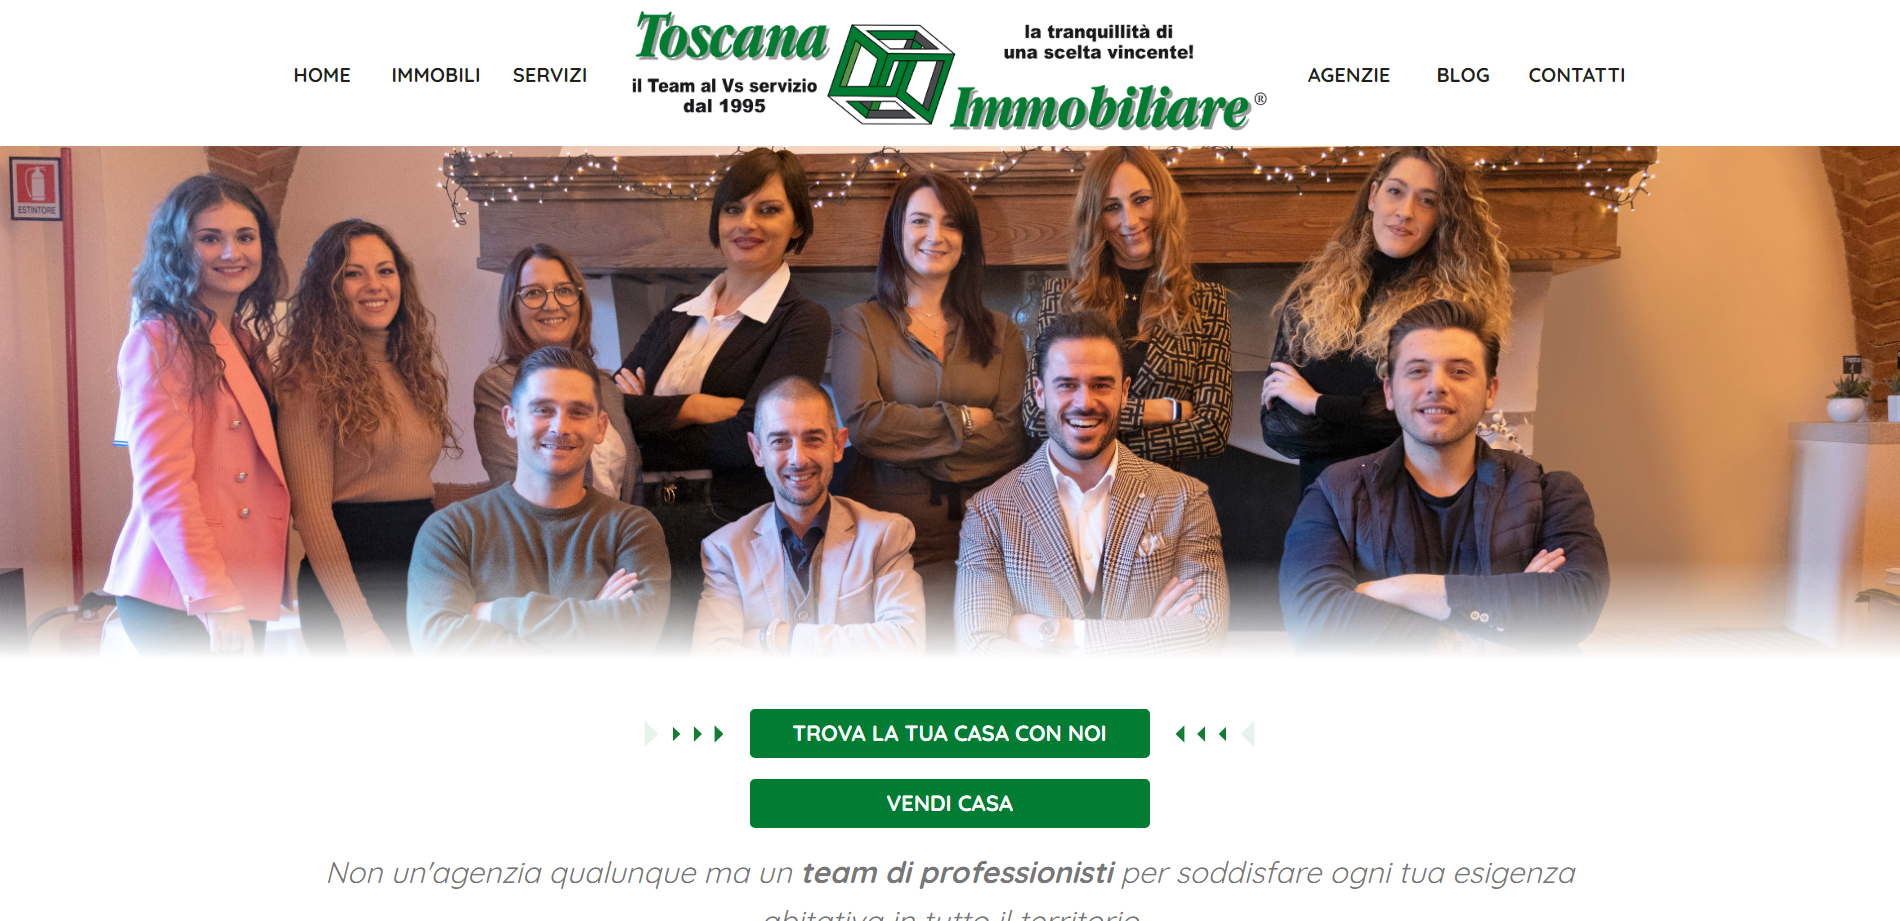 Il nuovo sito web di Toscana Immobiliare è online!